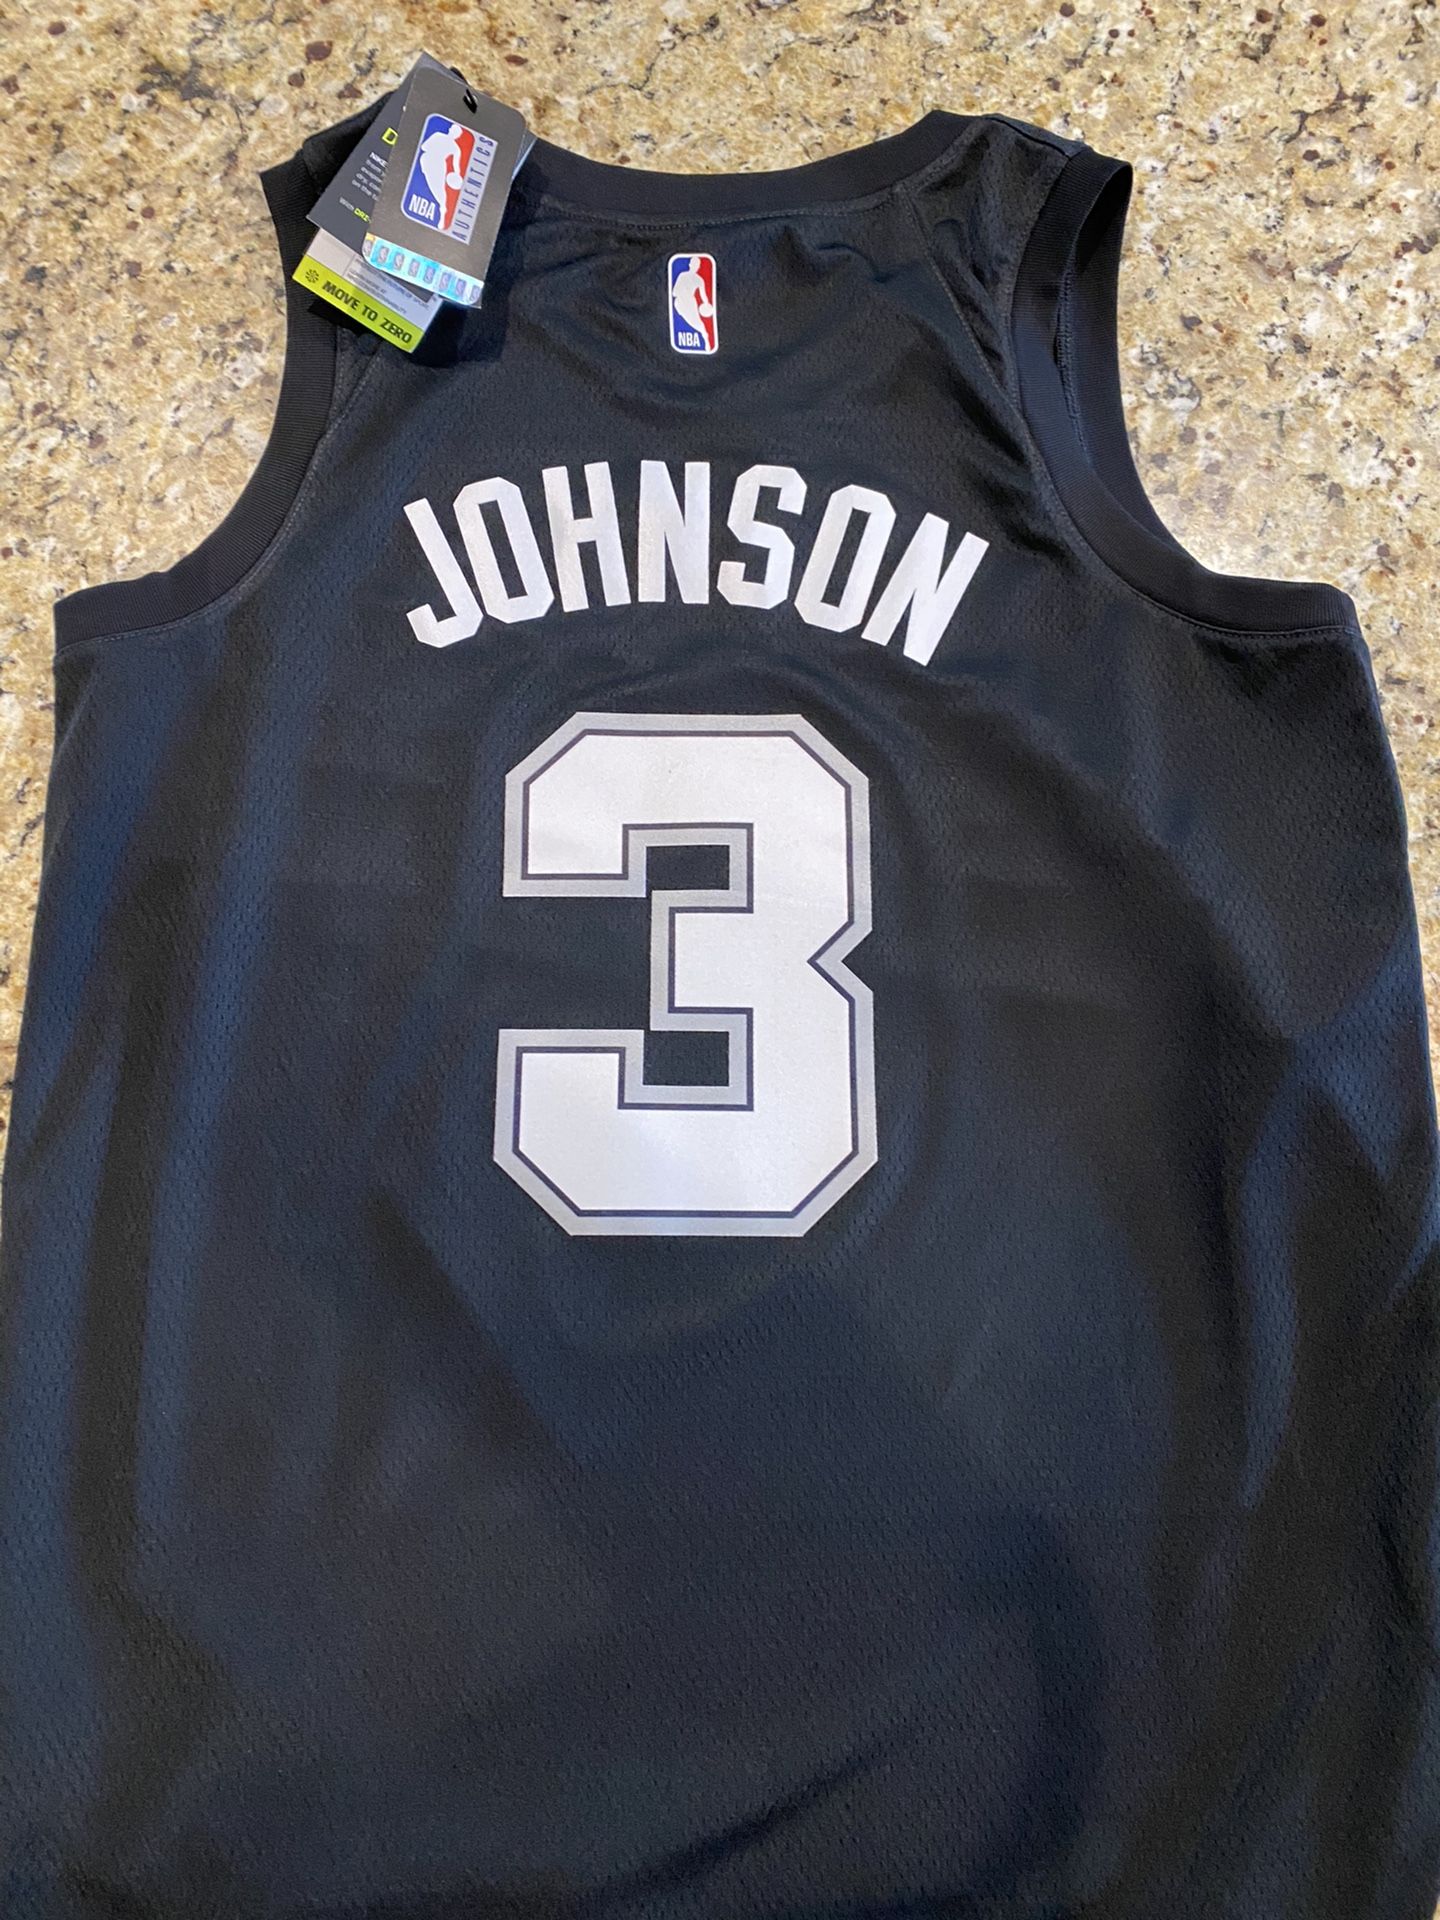 Keldon Johnson Fiesta Jersey for Sale in La Vernia, TX - OfferUp